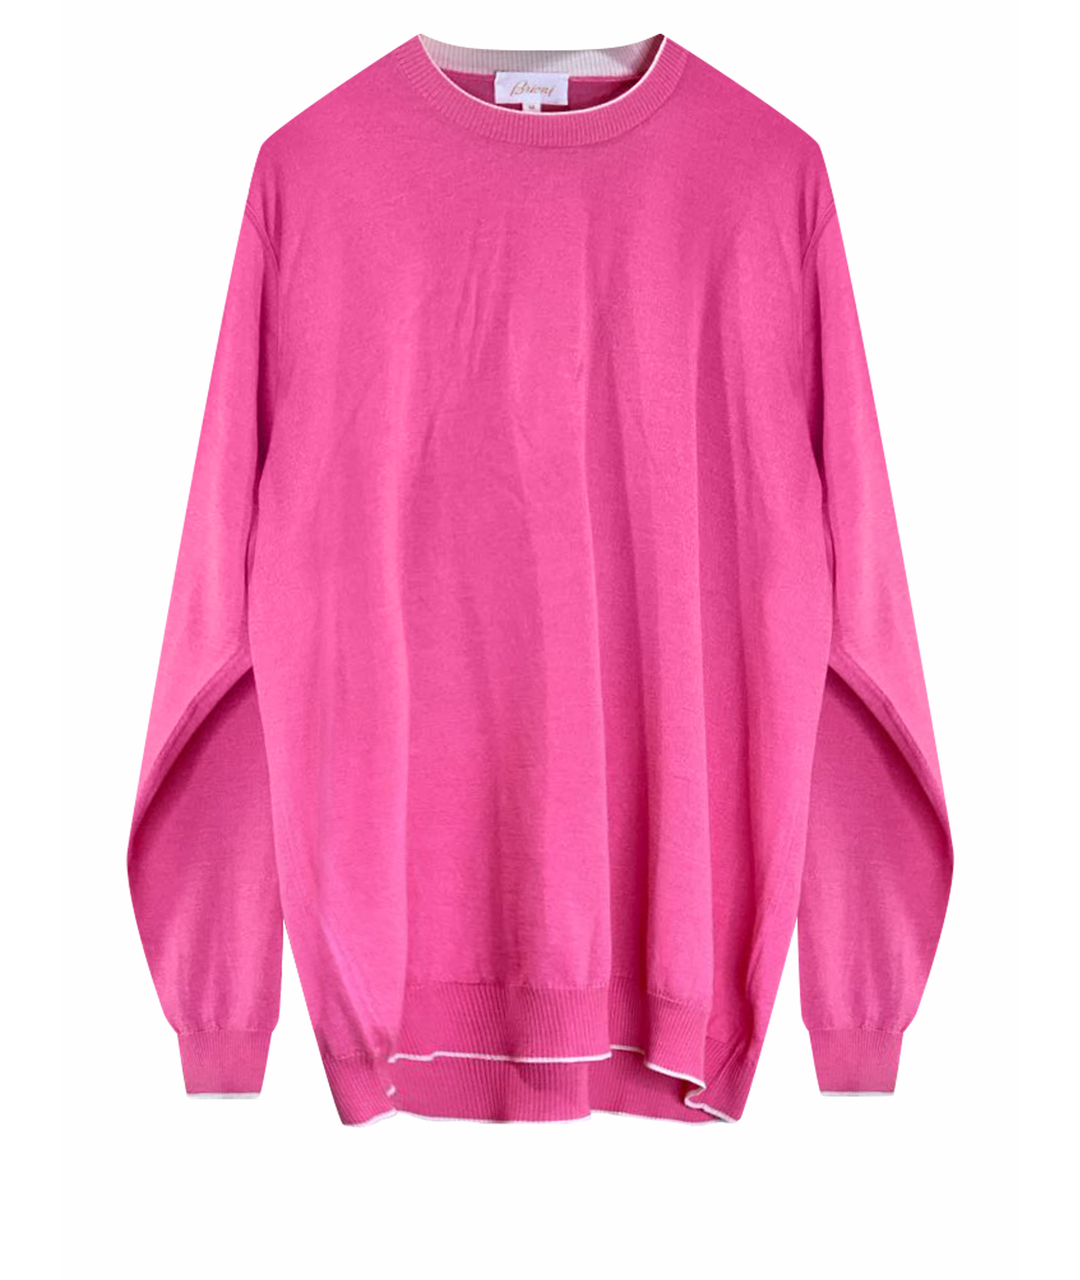 BRIONI Розовый кашемировый джемпер / свитер, фото 1